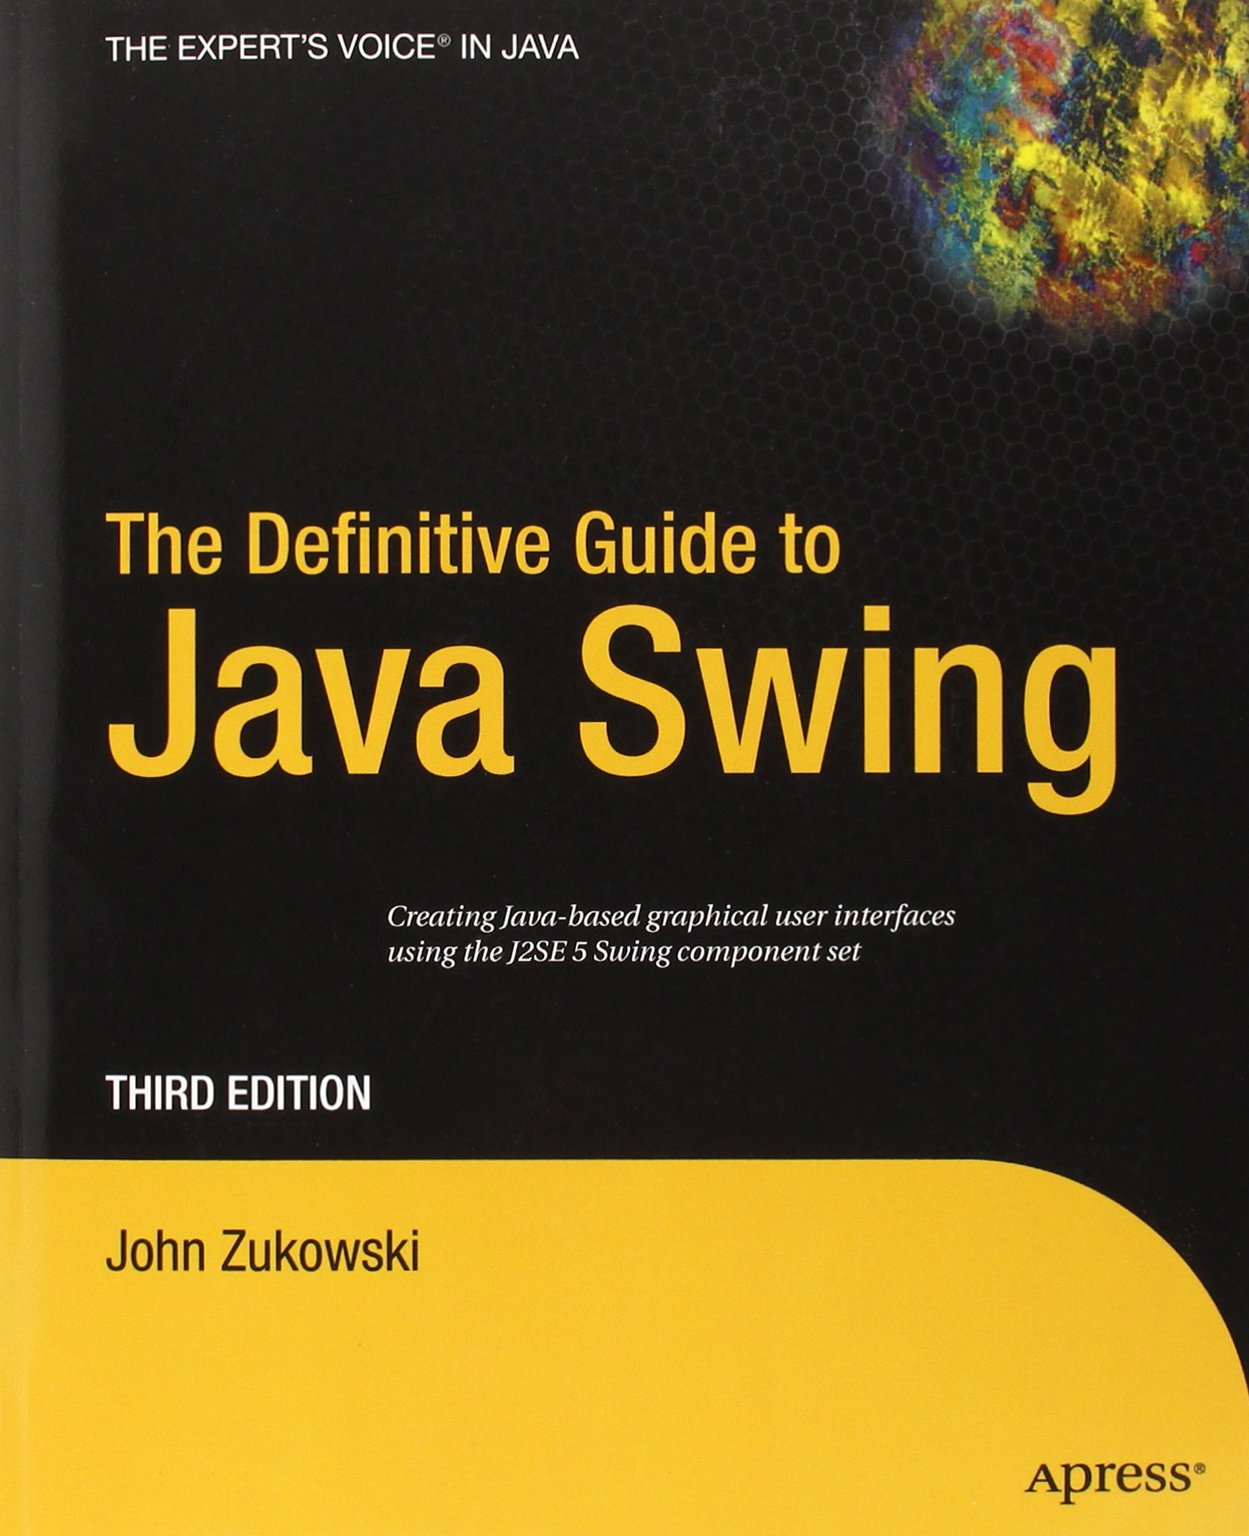 Java Swing权威指南(权威指南)